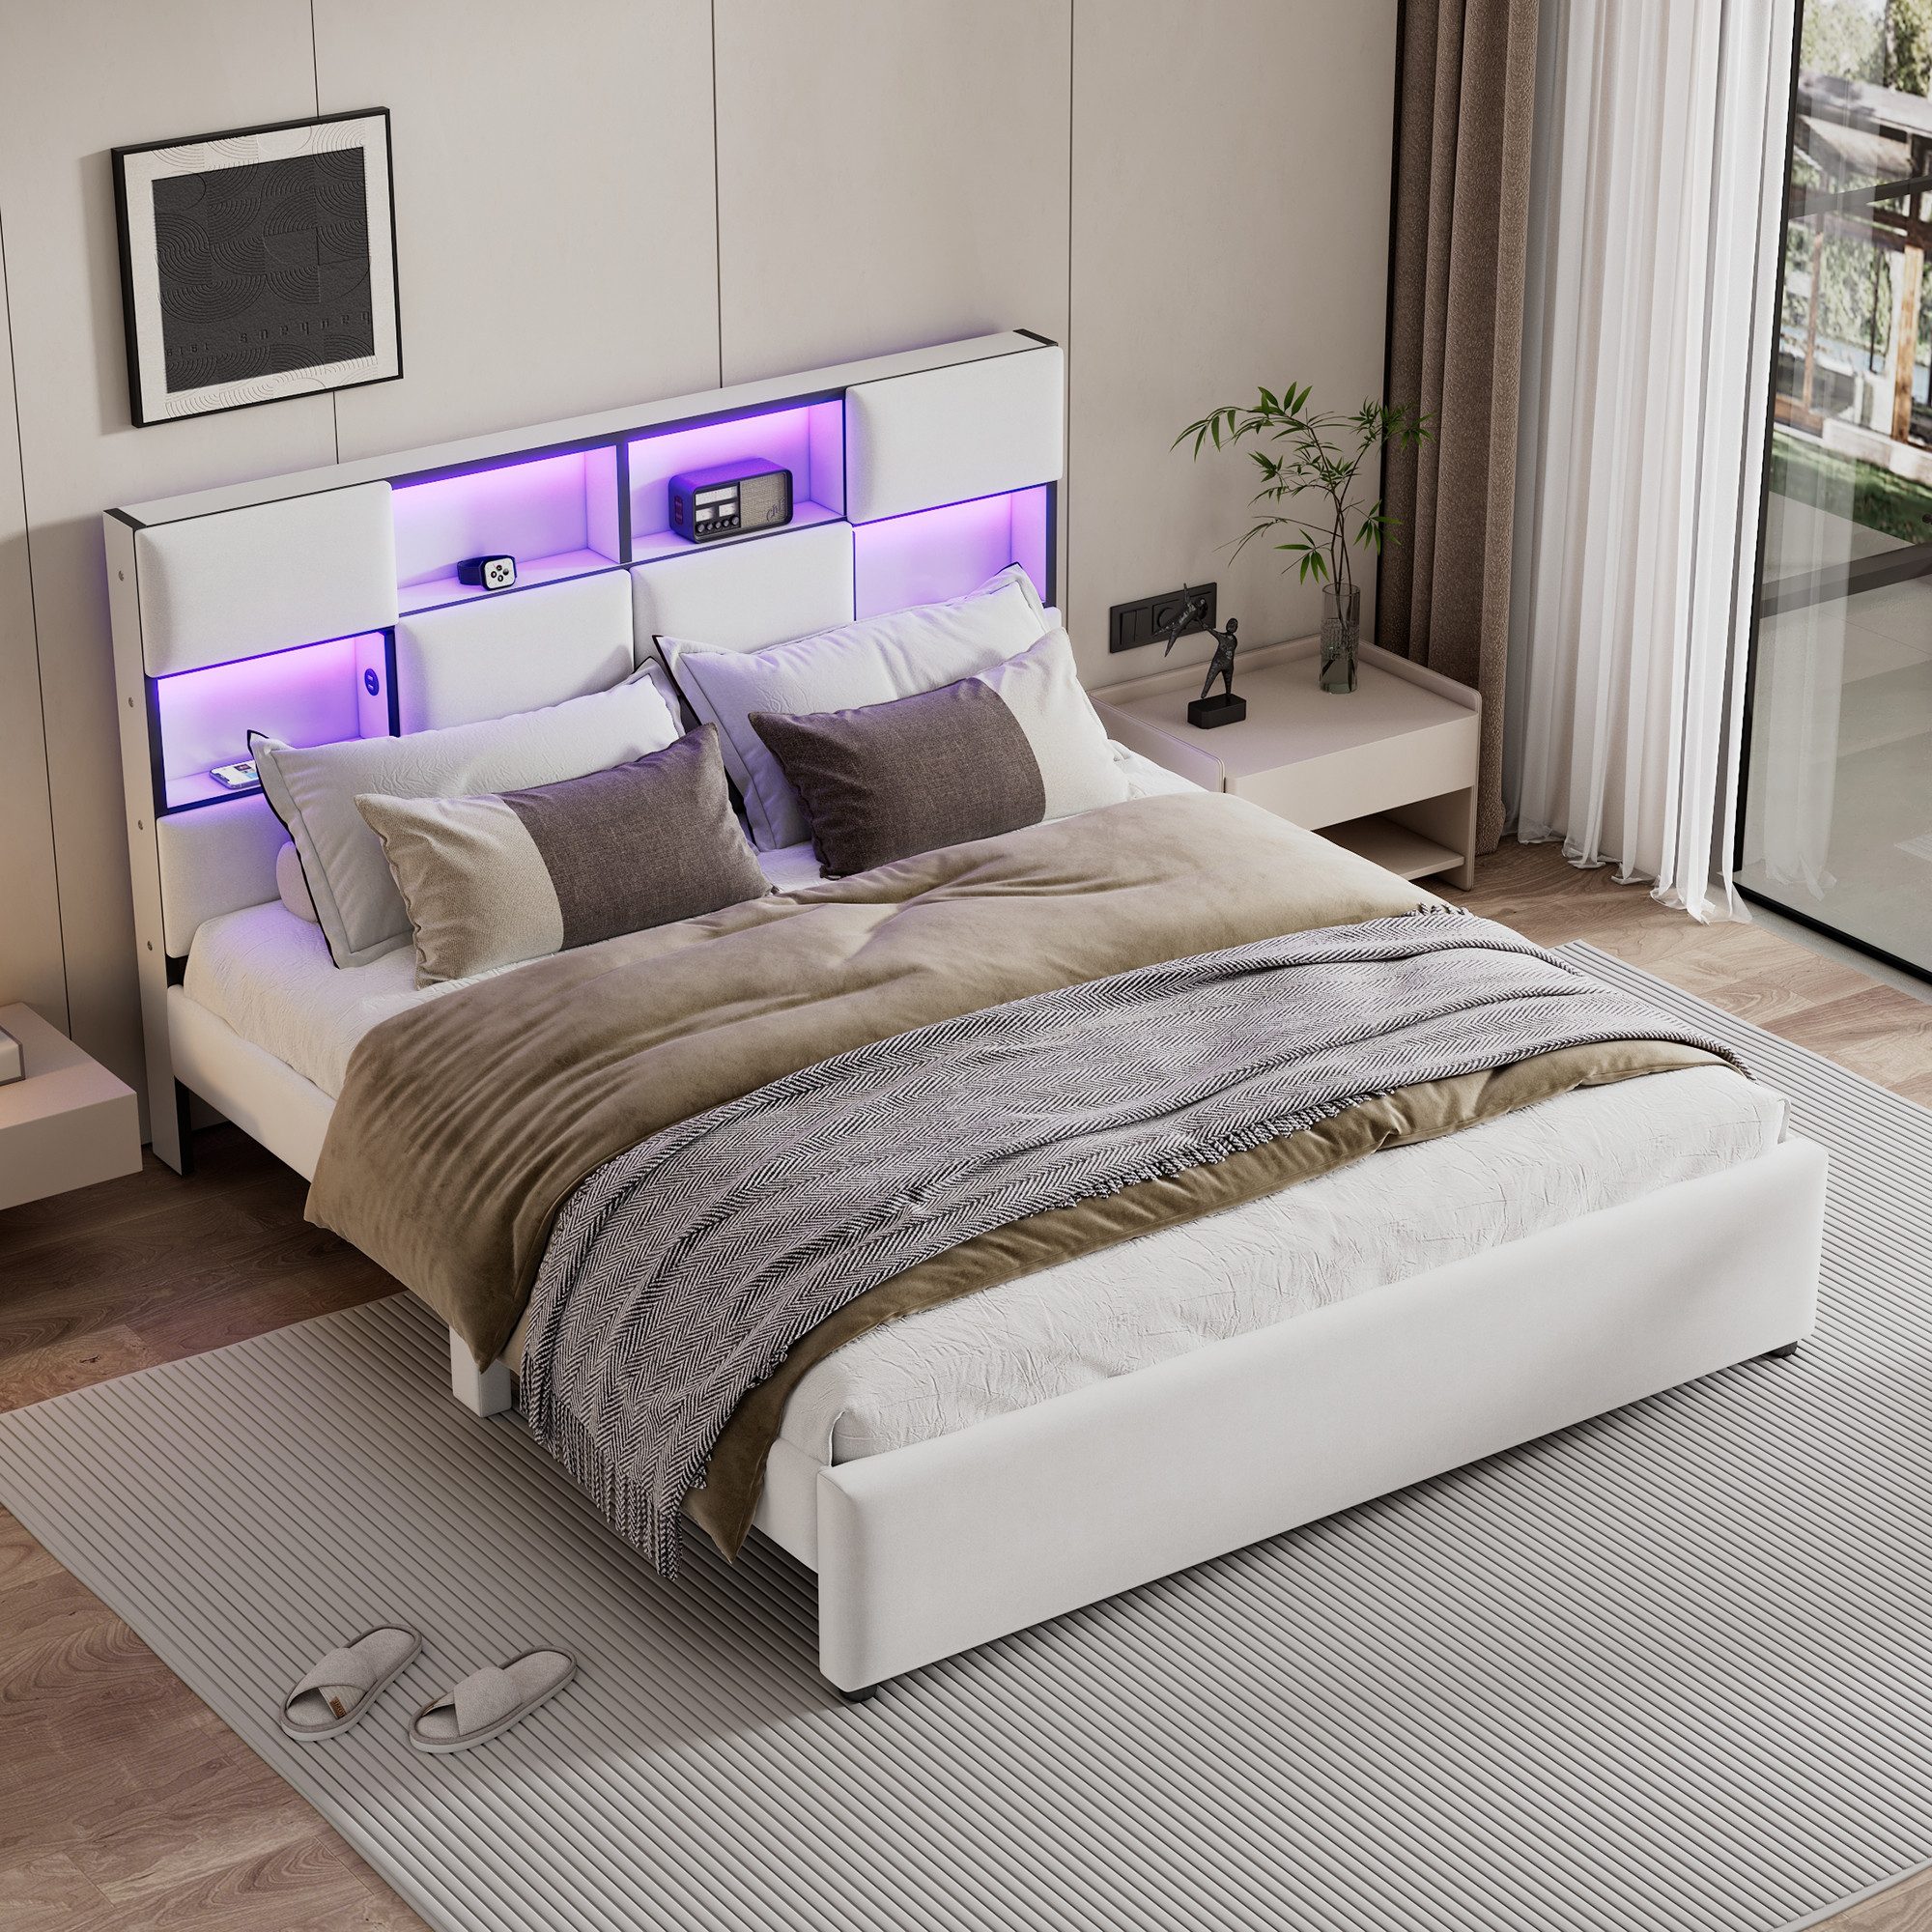 WISHDOR Polsterbett Hausbett, verstellbares Umgebungslicht (mehrere Ablagefächer an der Seite des Bettes, USB-Anschluss, 160*200cm), ohne Matratze